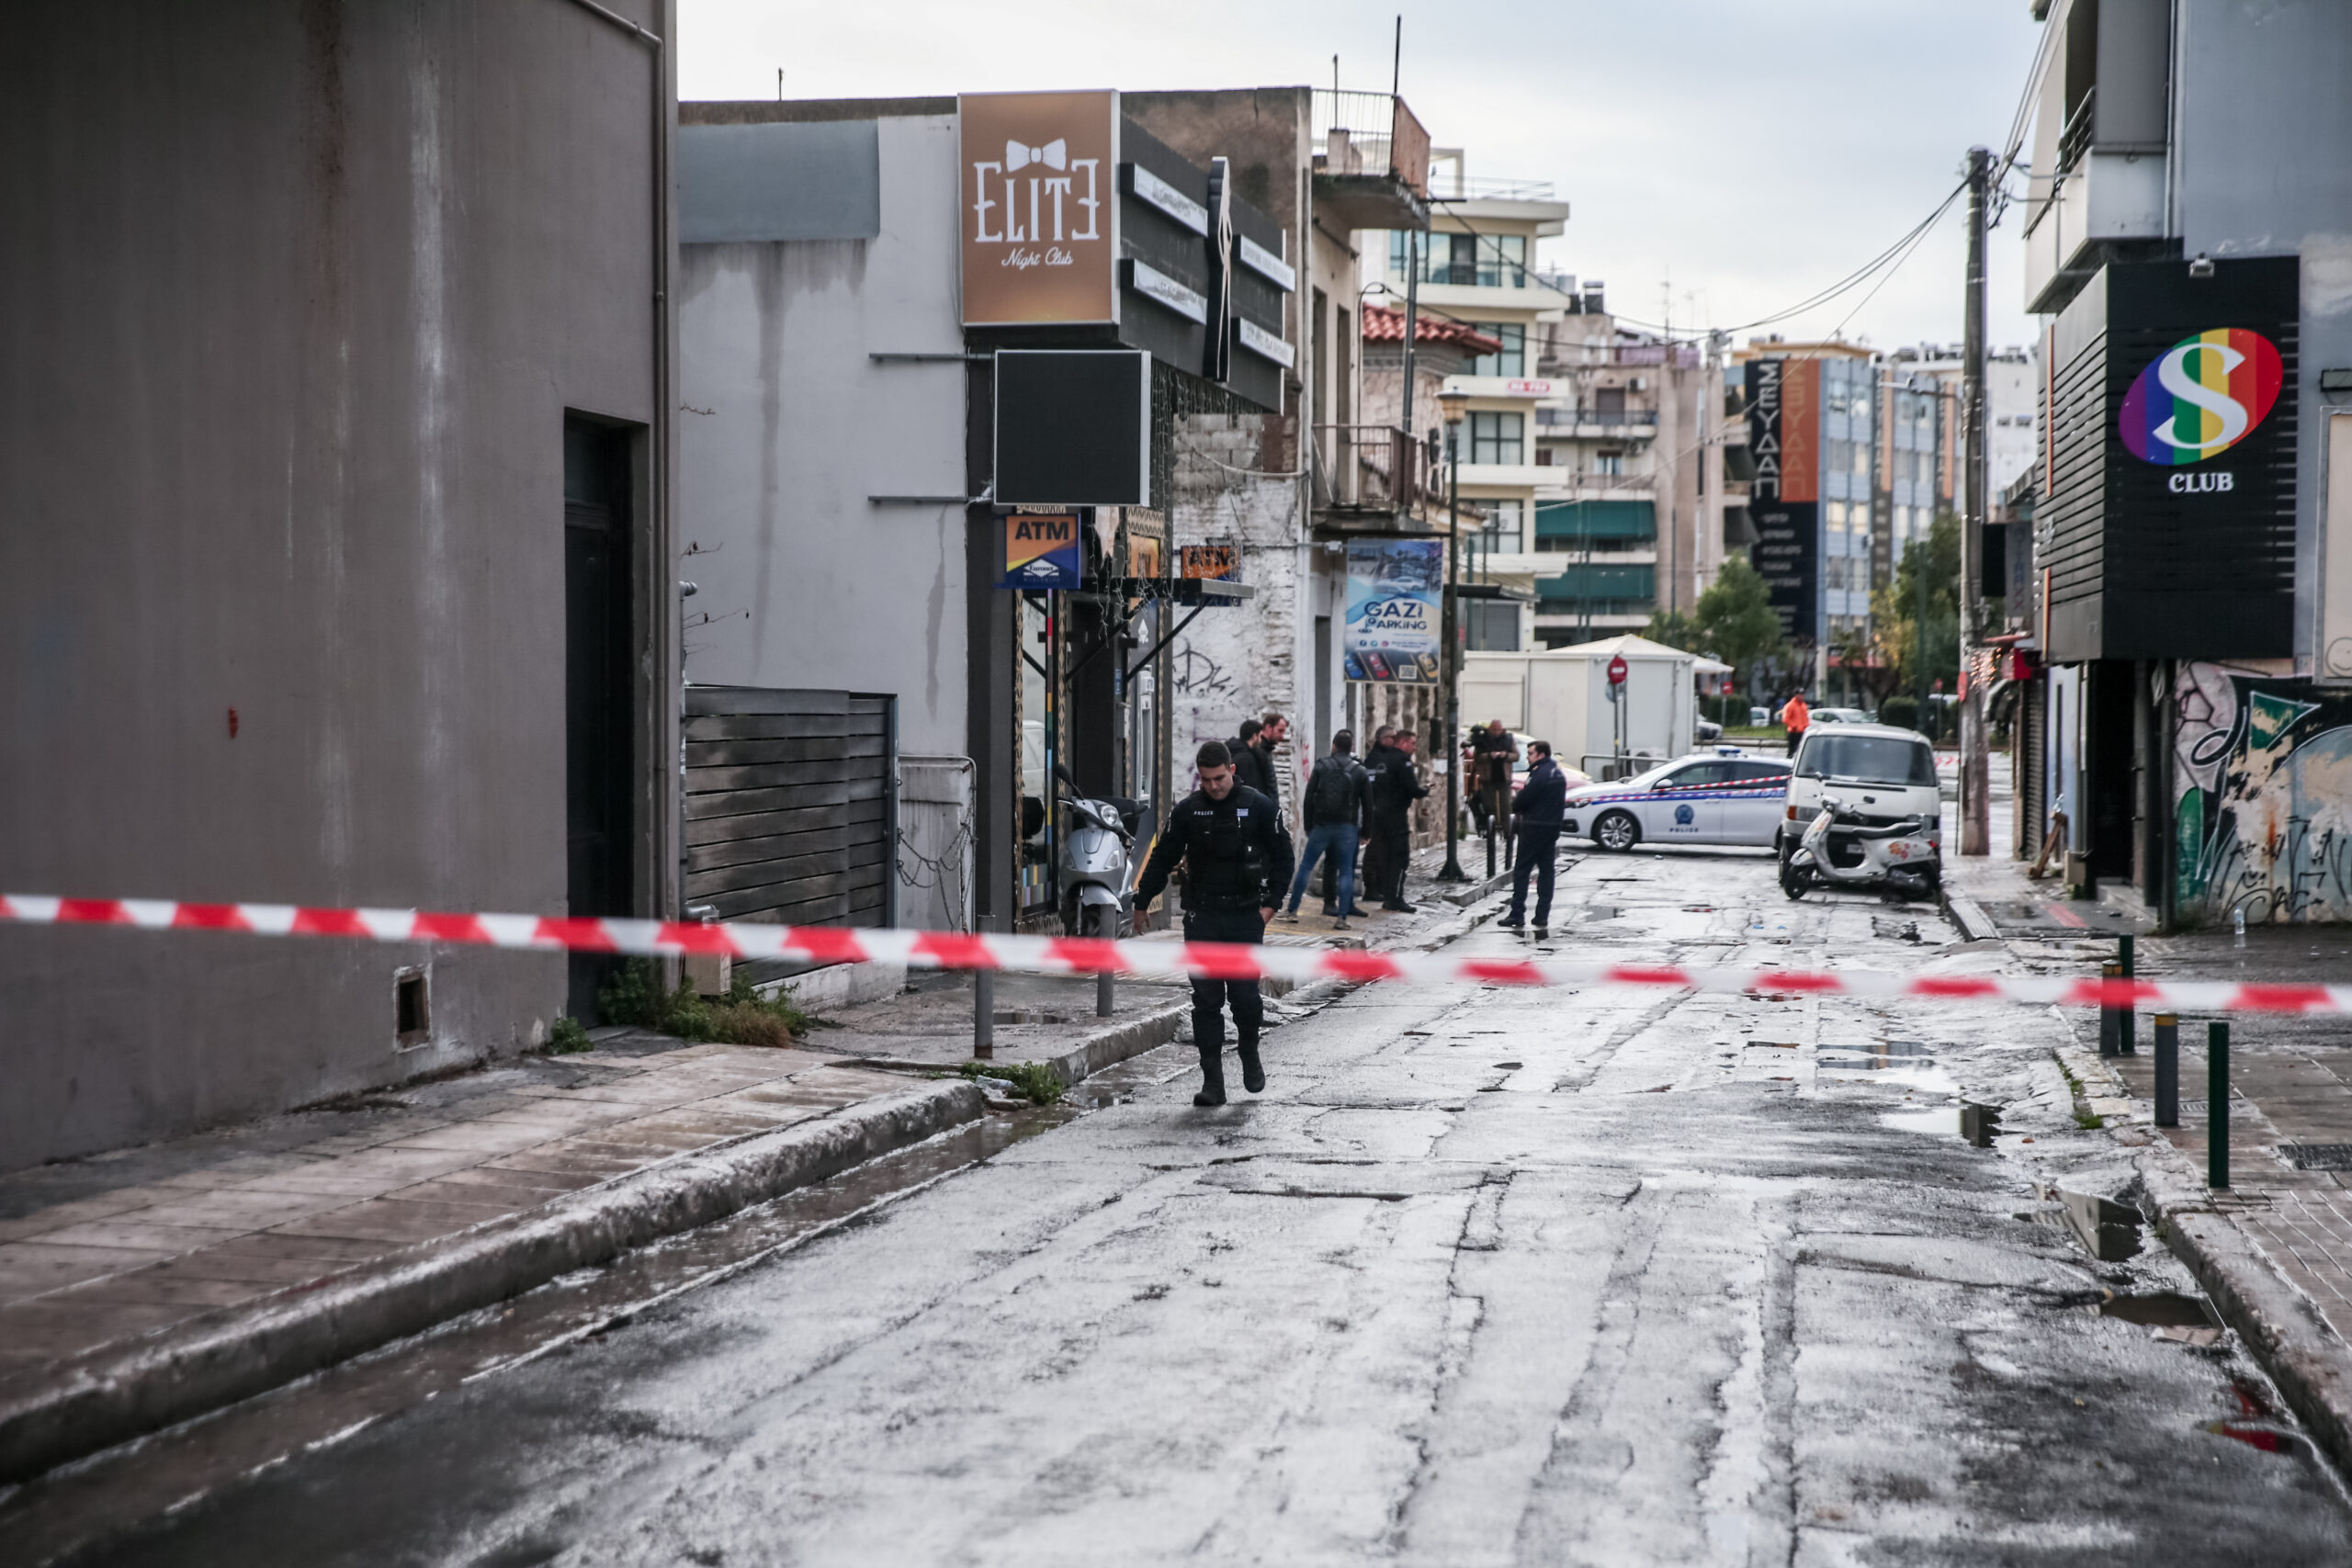 Γκάζι: Απολογείται σήμερα ο 33χρονος με βαρύ ποινικό μητρώο – Σε Ελλάδα και Αλβανία οι έρευνες για τον εντοπισμό του 37χρονου δράστη